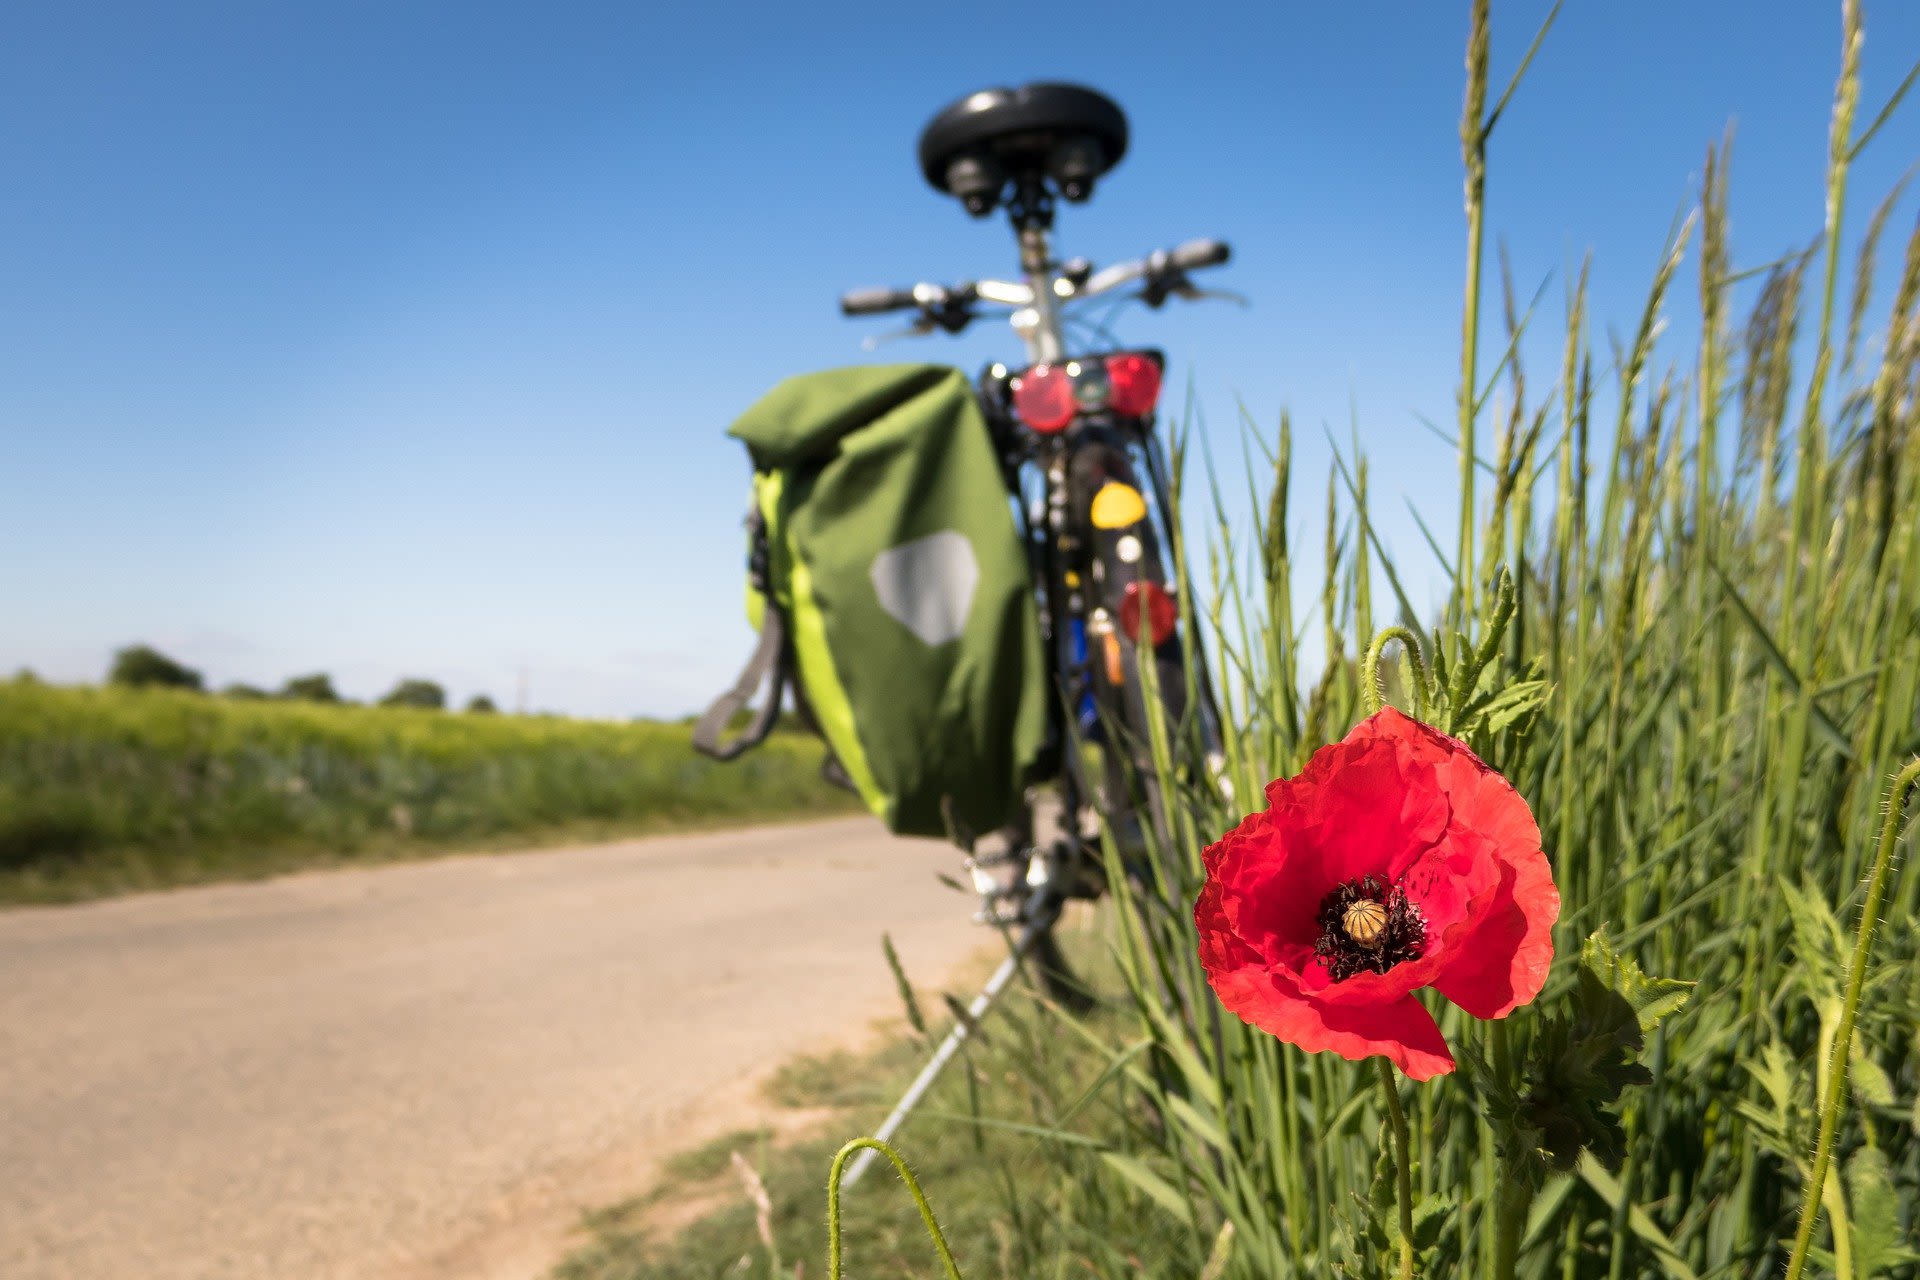 Lekker weer om te fietsen. Beeld: Pixabay-Didgeman

